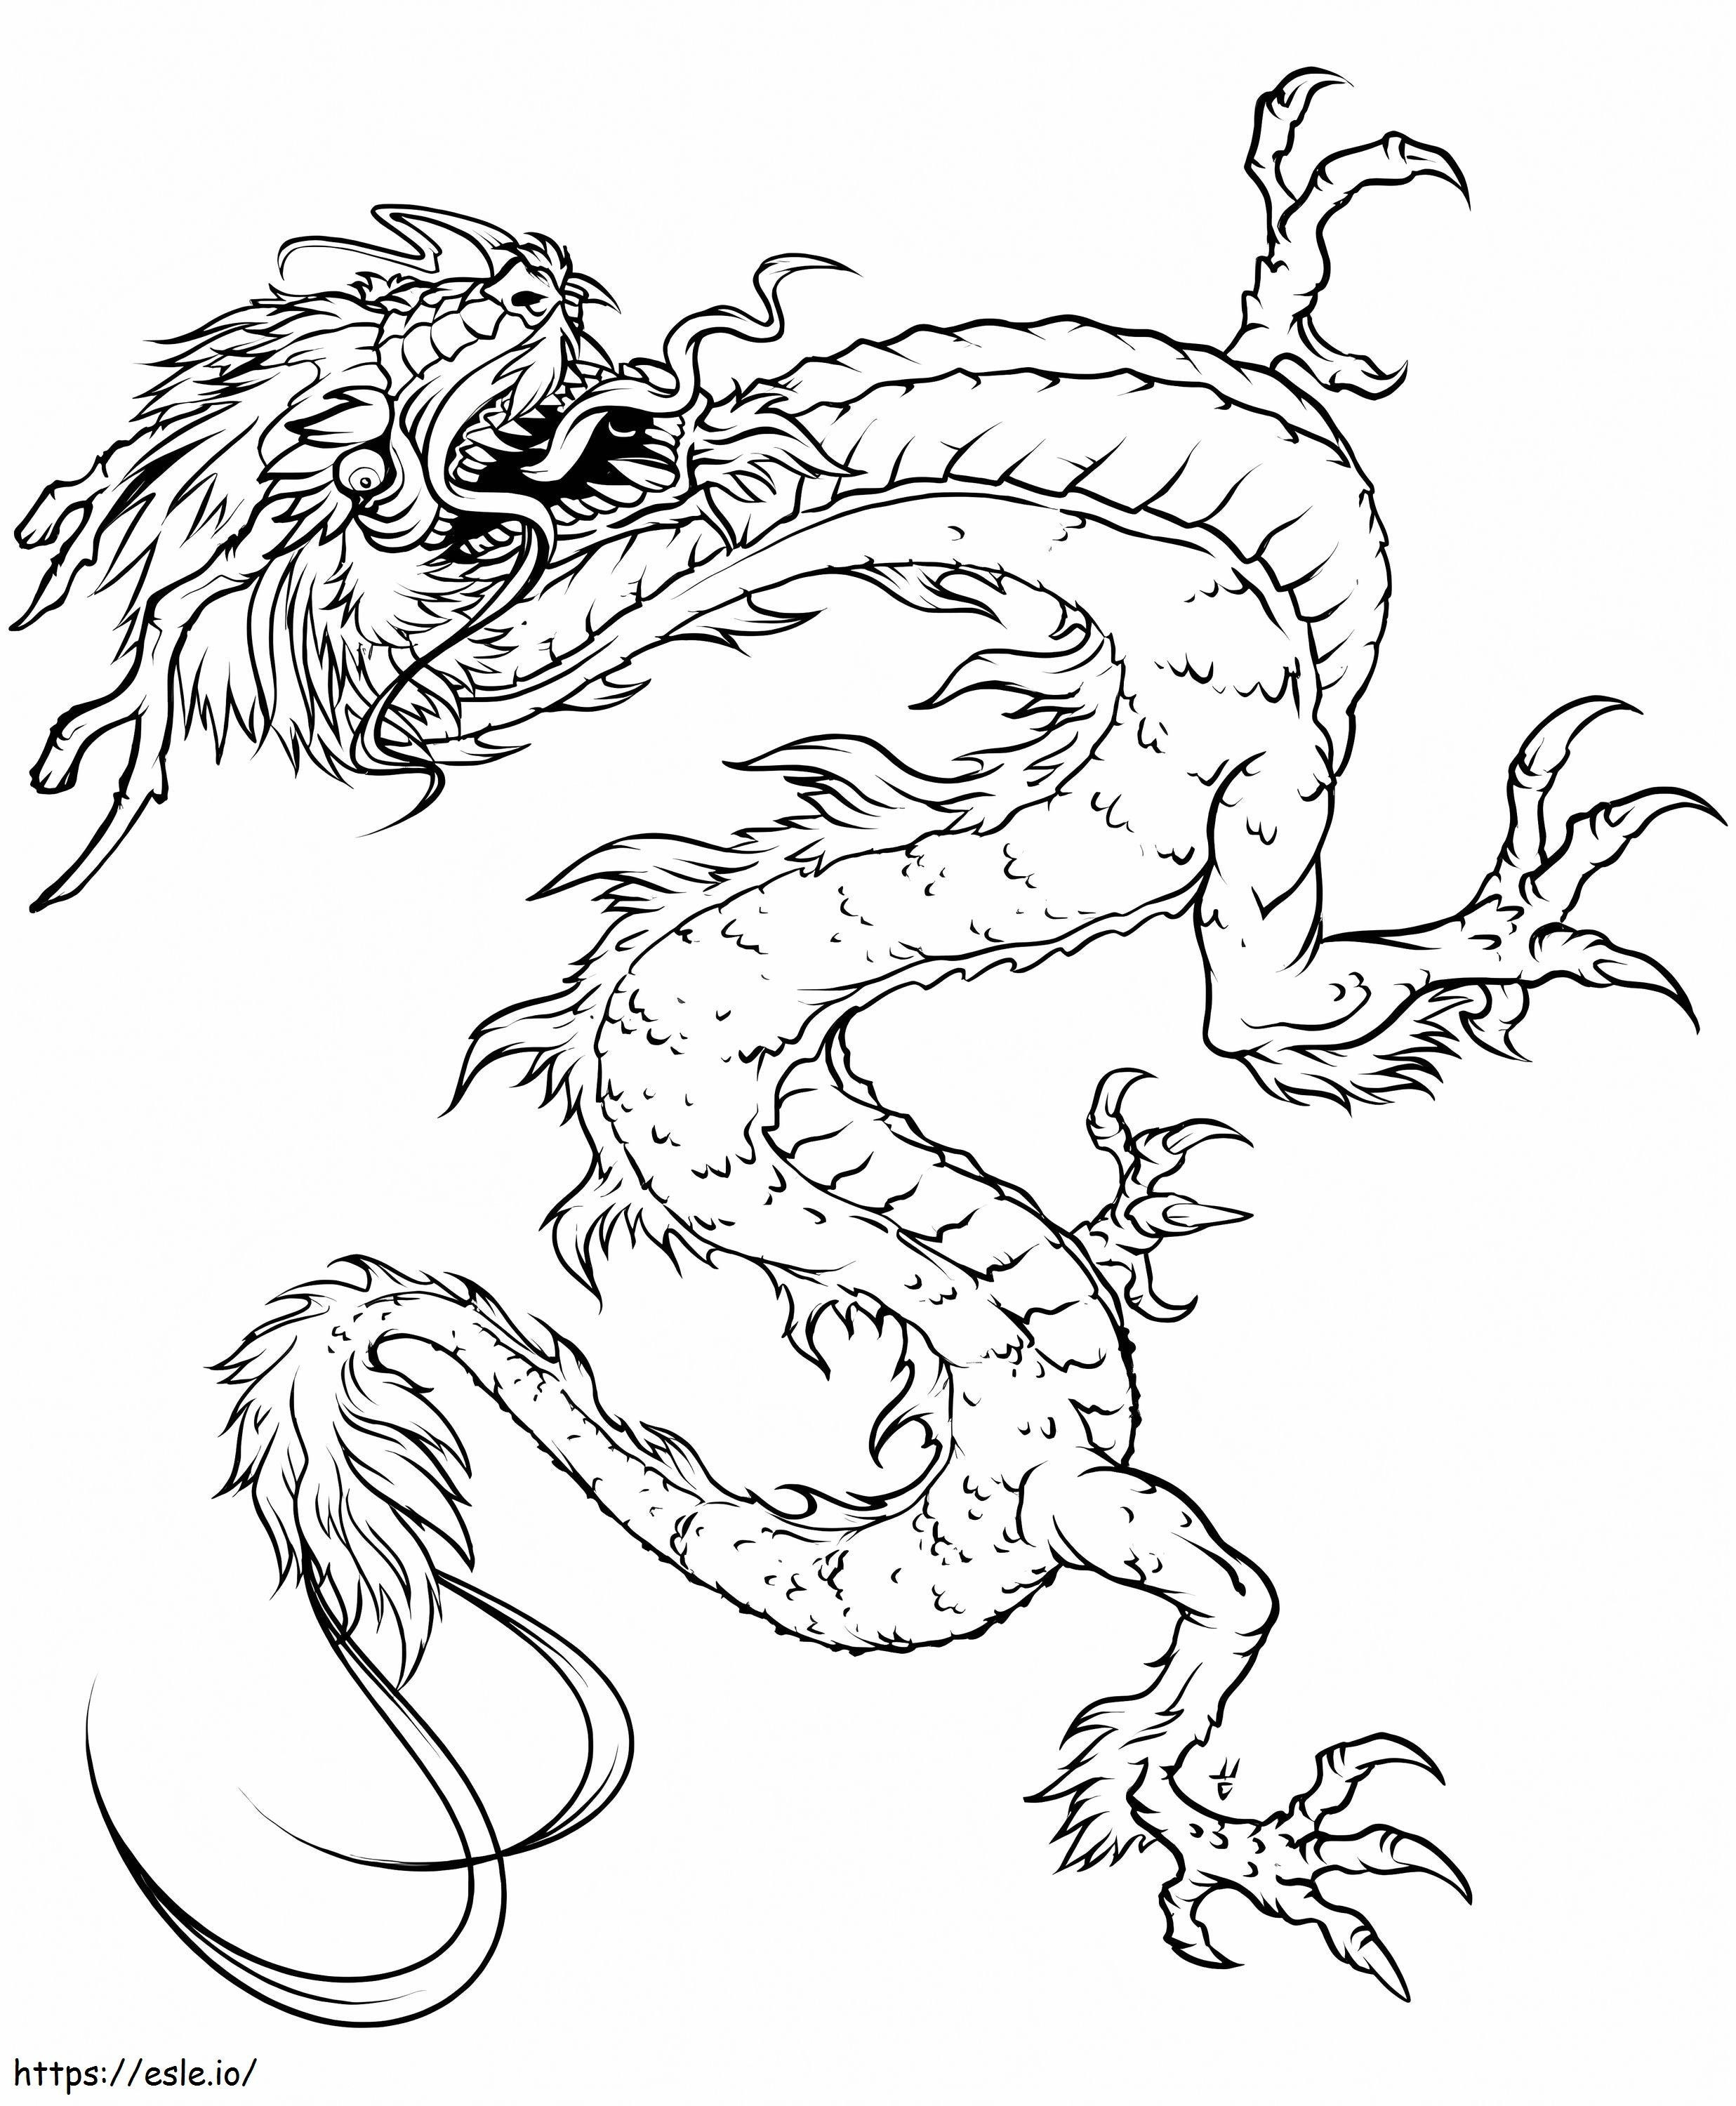 Genial dragón chino para colorear